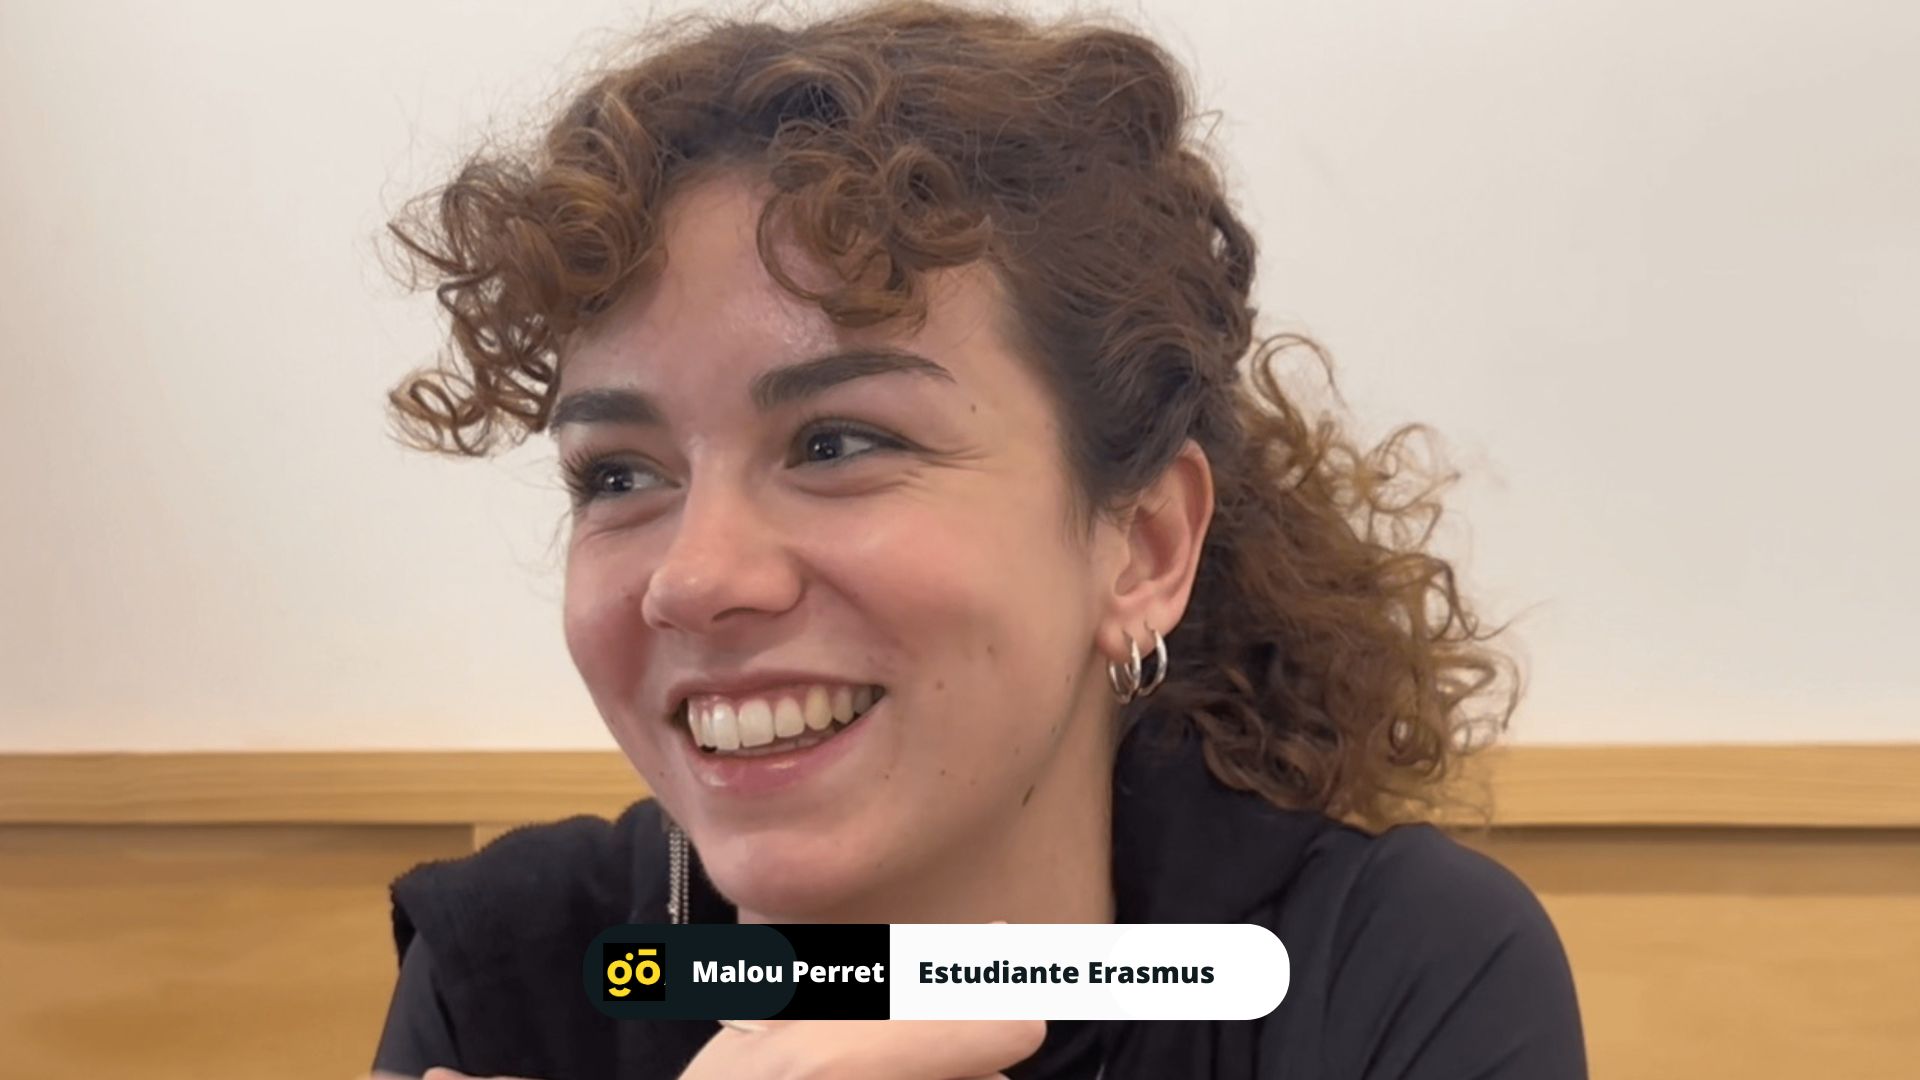 Malou Perret (estudiante erasmus) : Una Trayectoria Educativa Transfronteriza hacia la Fisioterapia